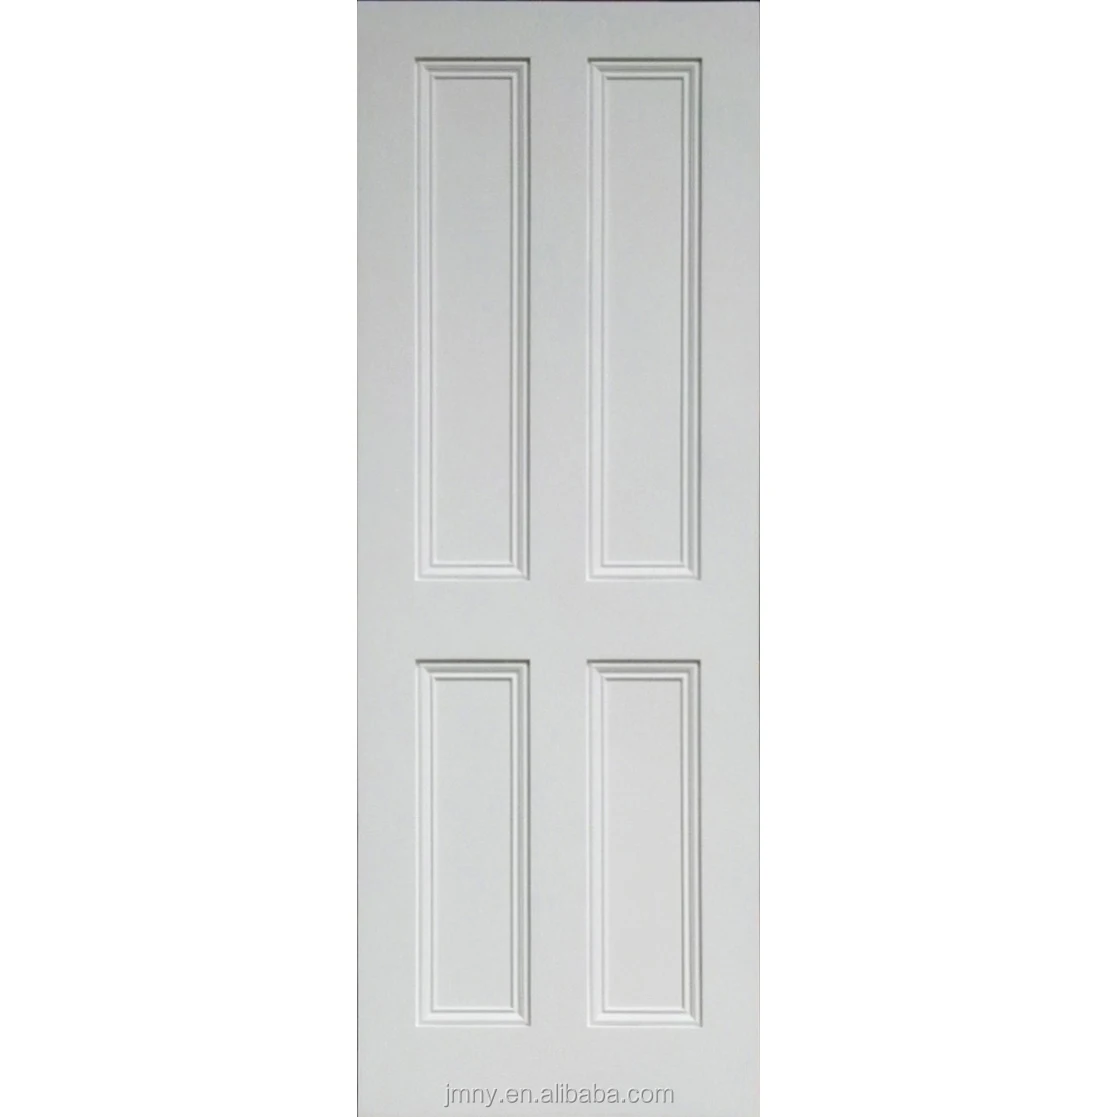 White Paint Color China Supplier Solid Wood 4 Panel Door Interior Door Buy Wood Panel Door Design 6 Panel Interior Door Interior Solid Wooden Doors